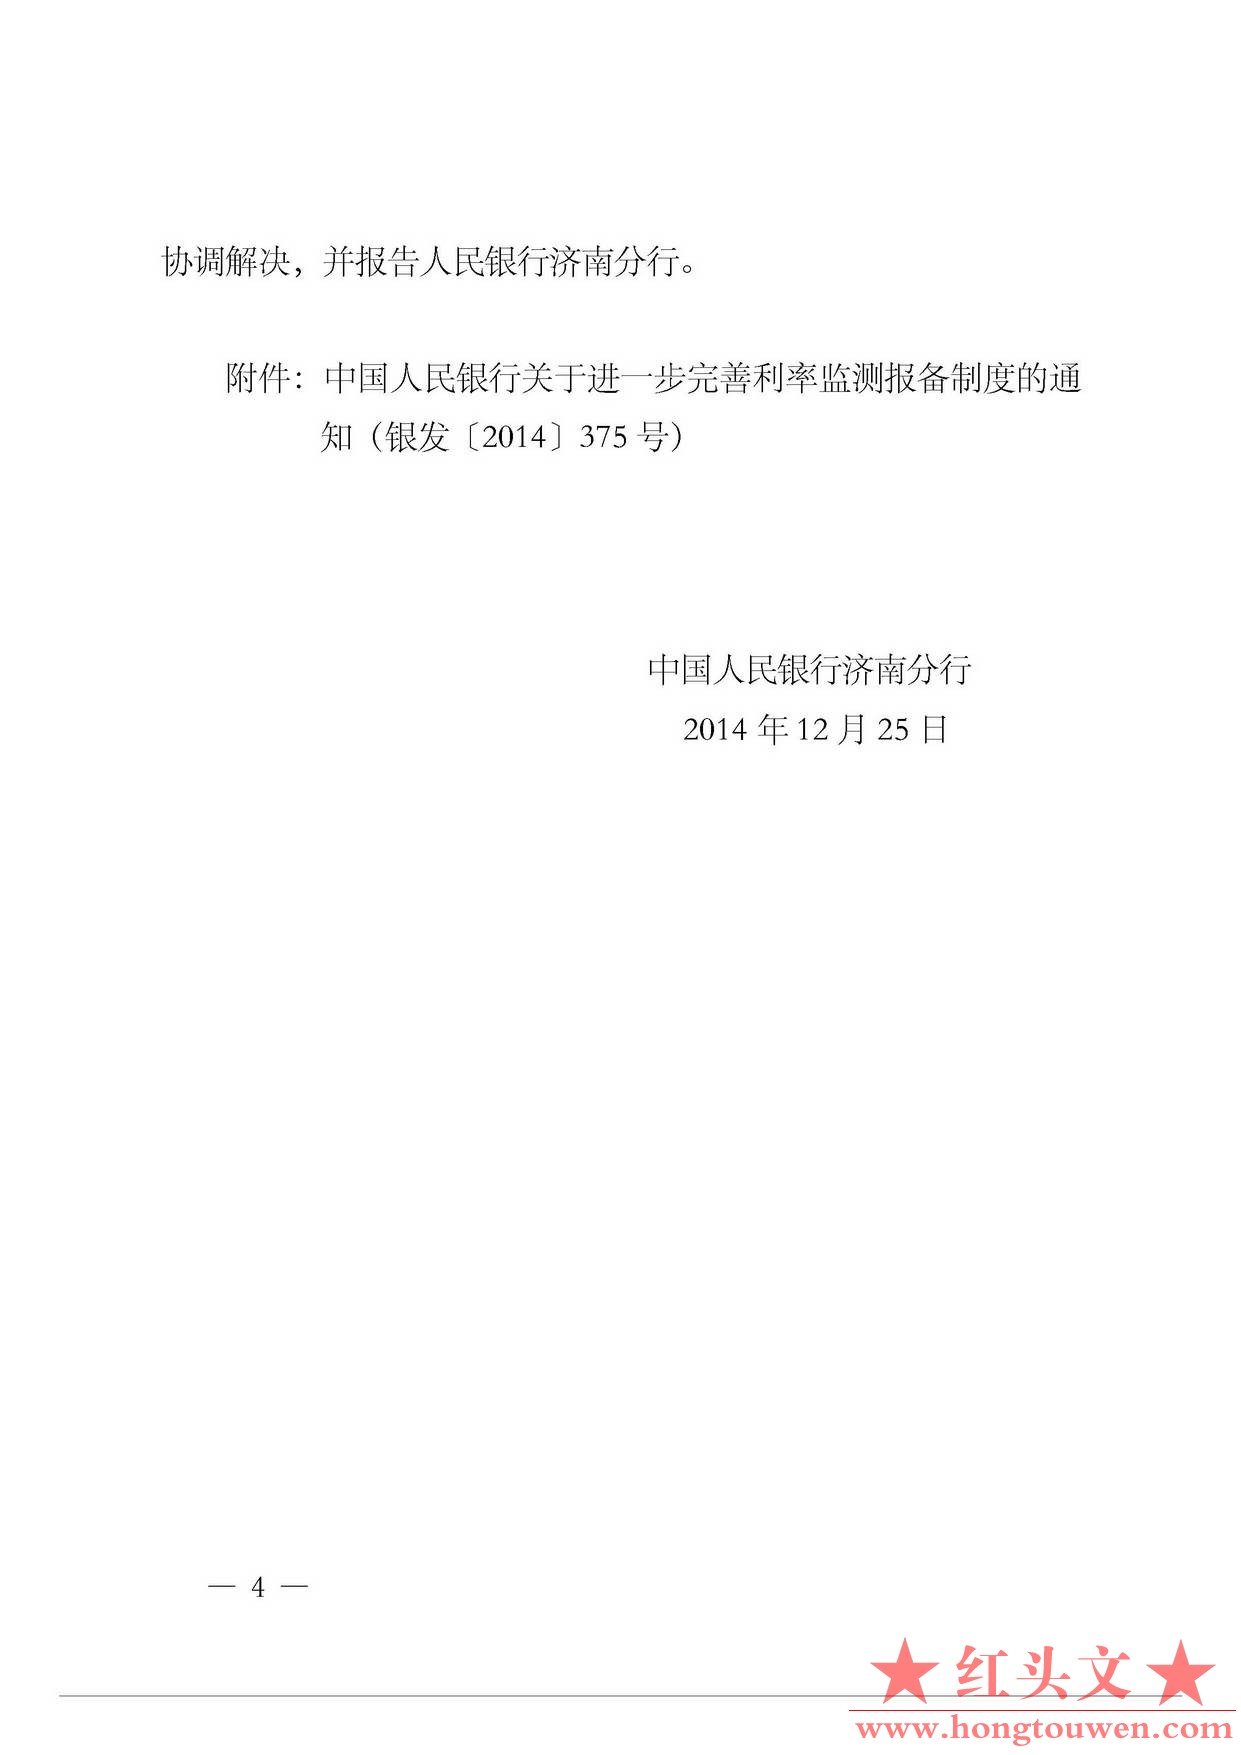 济银发[2014]380号-中国人民银行济南分行转发中国人民银行关于进一步完善利率监测报备.jpg